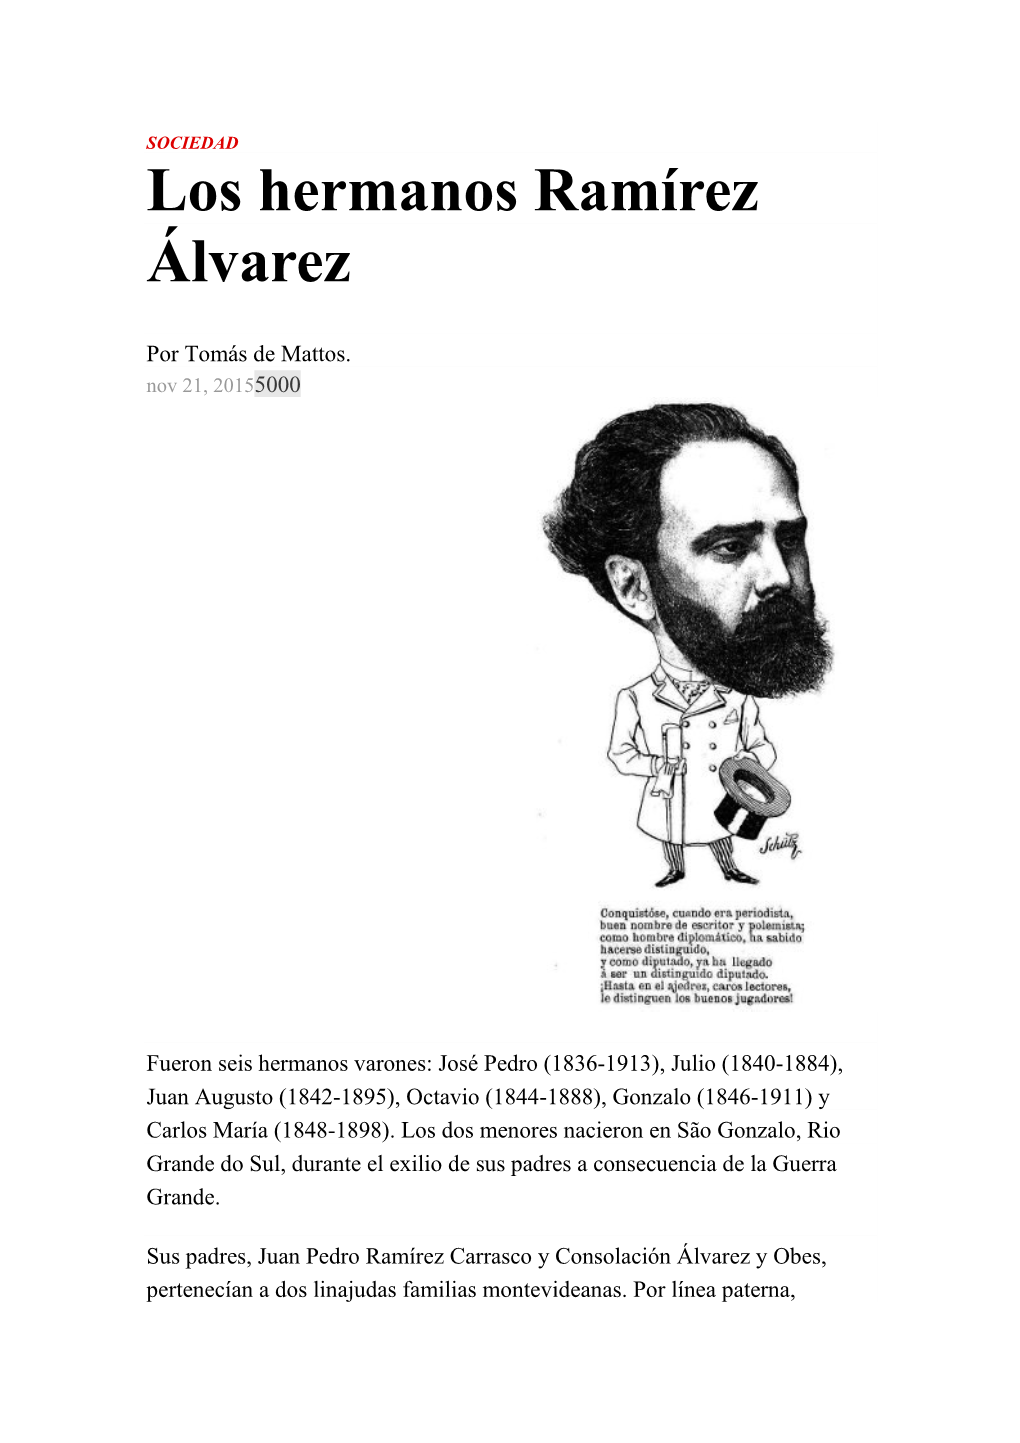 Los Hermanos Ramírez Álvarez